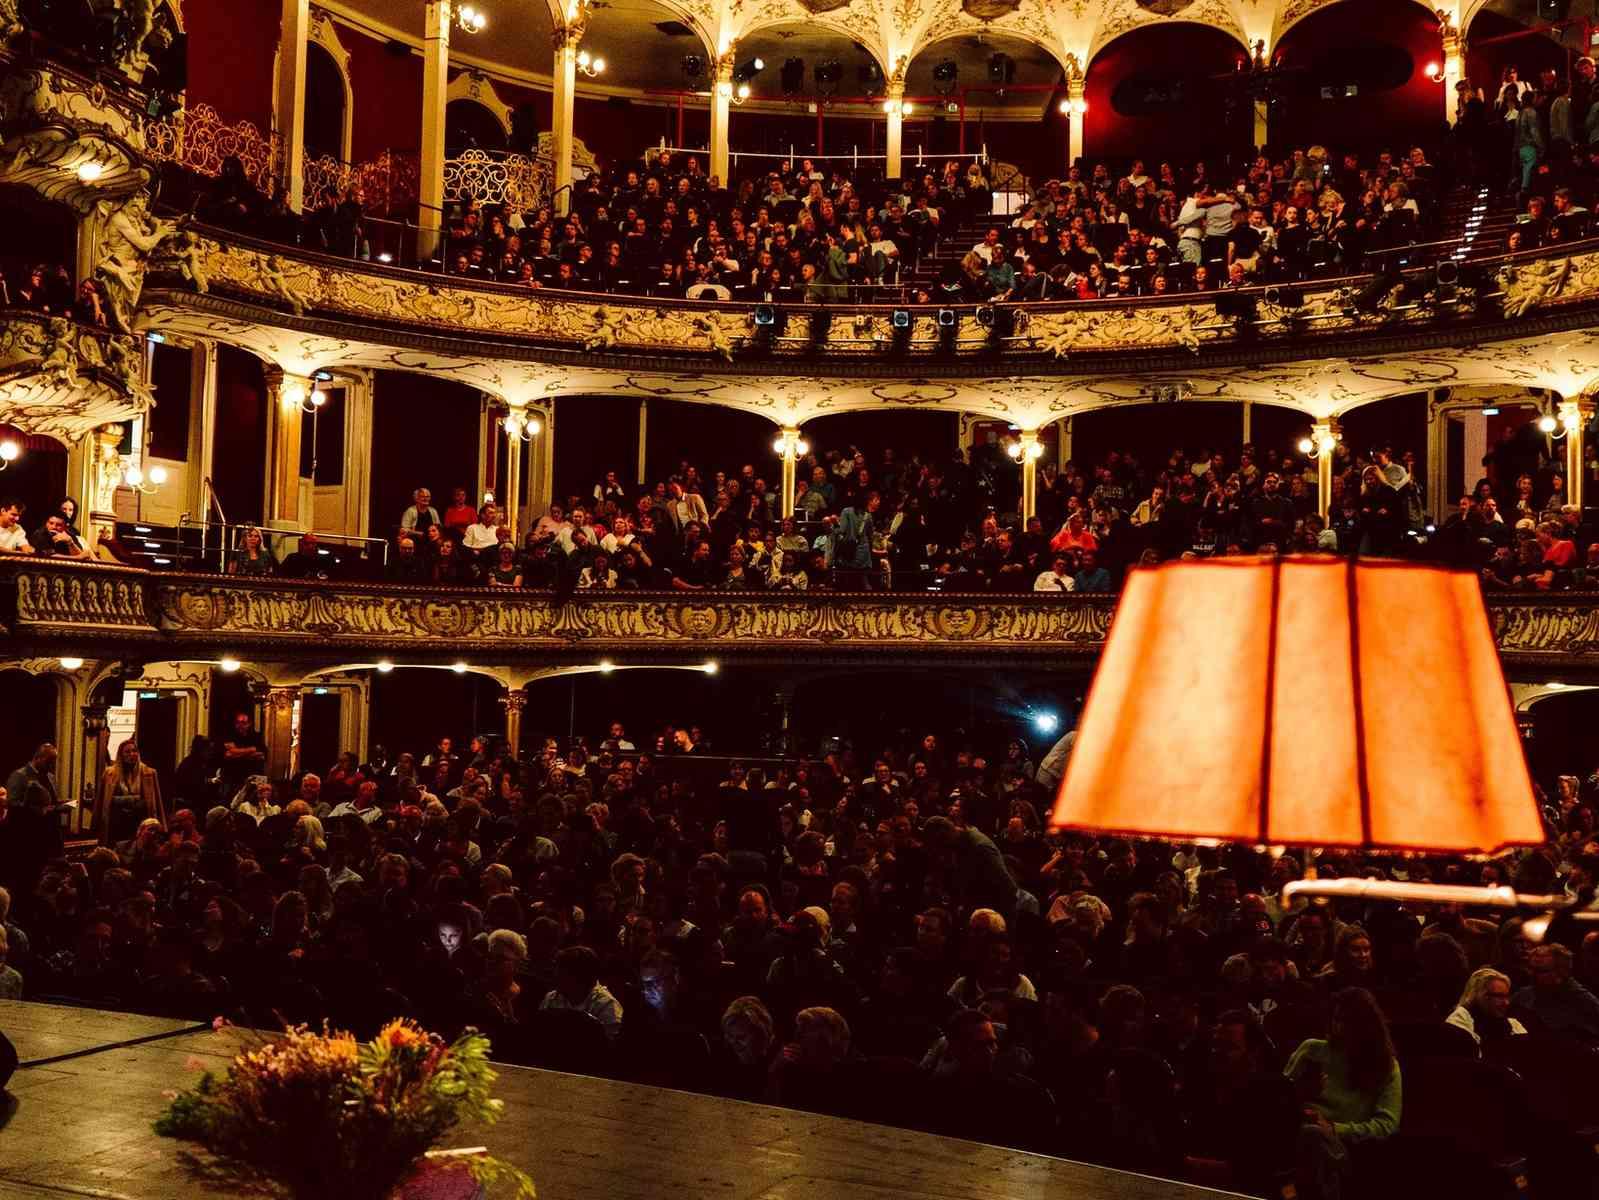 Schauspielhaus von der Bühne fotografiert mit Publikum